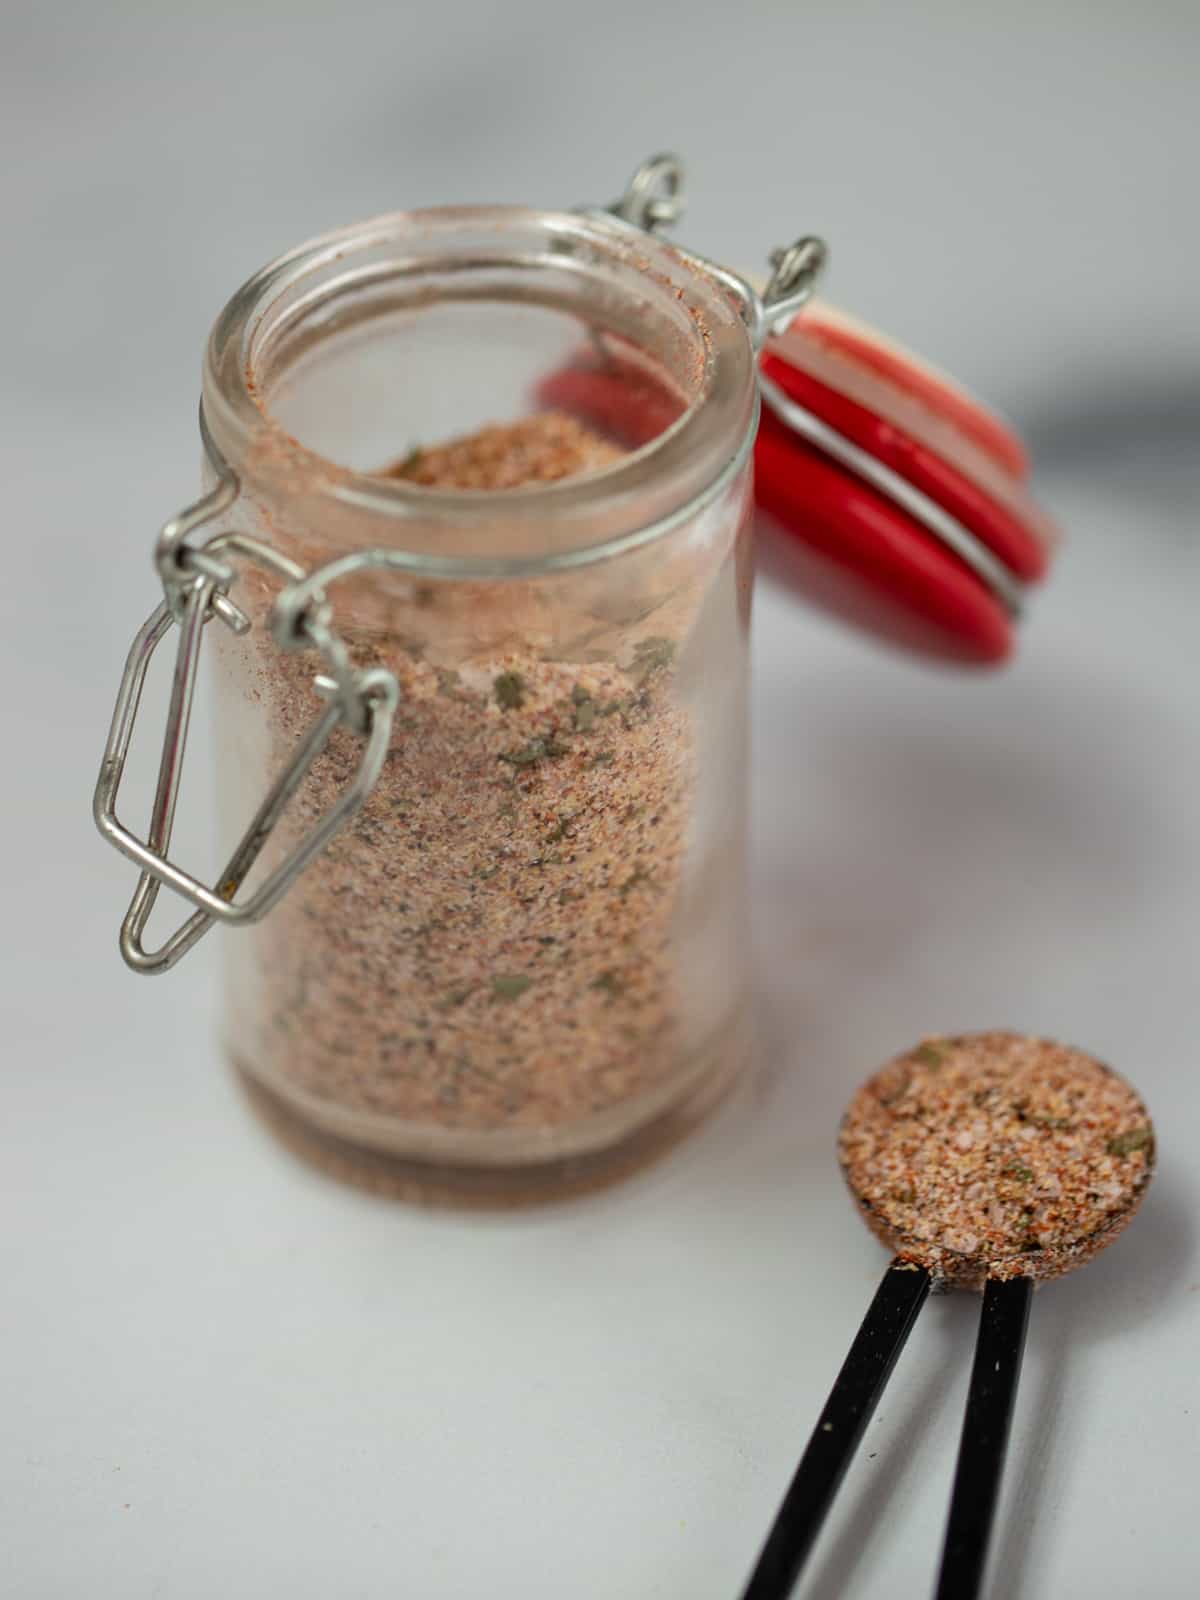 Spice jard filled with seasoned salt blend. 